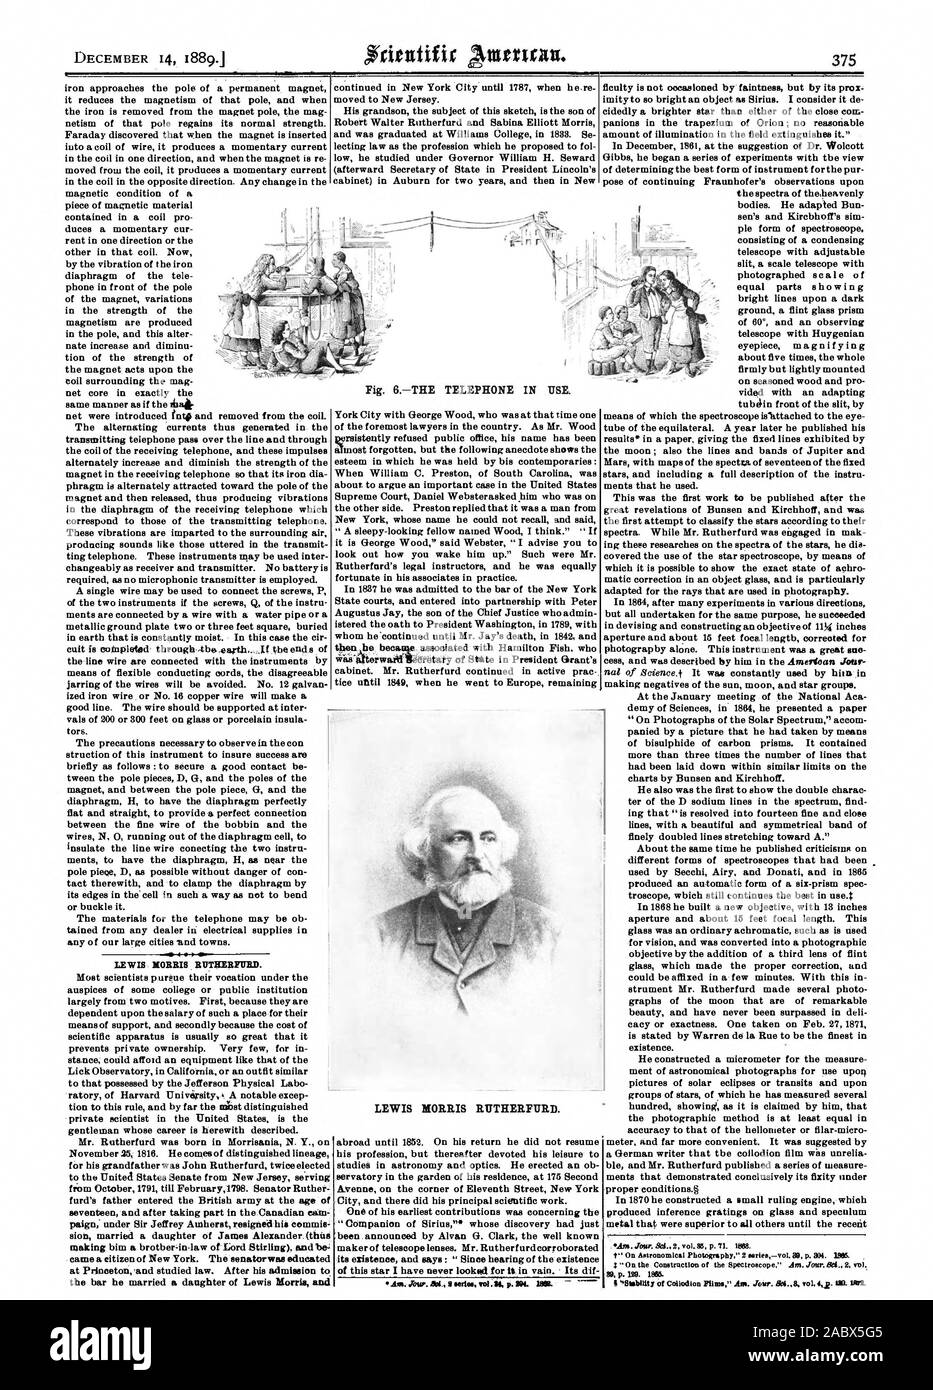 LEWIS MORRIS RUTHERFURD. LEWIS MORRIS RUTHERFURD., scientific american, 1889-12-14 Stock Photo